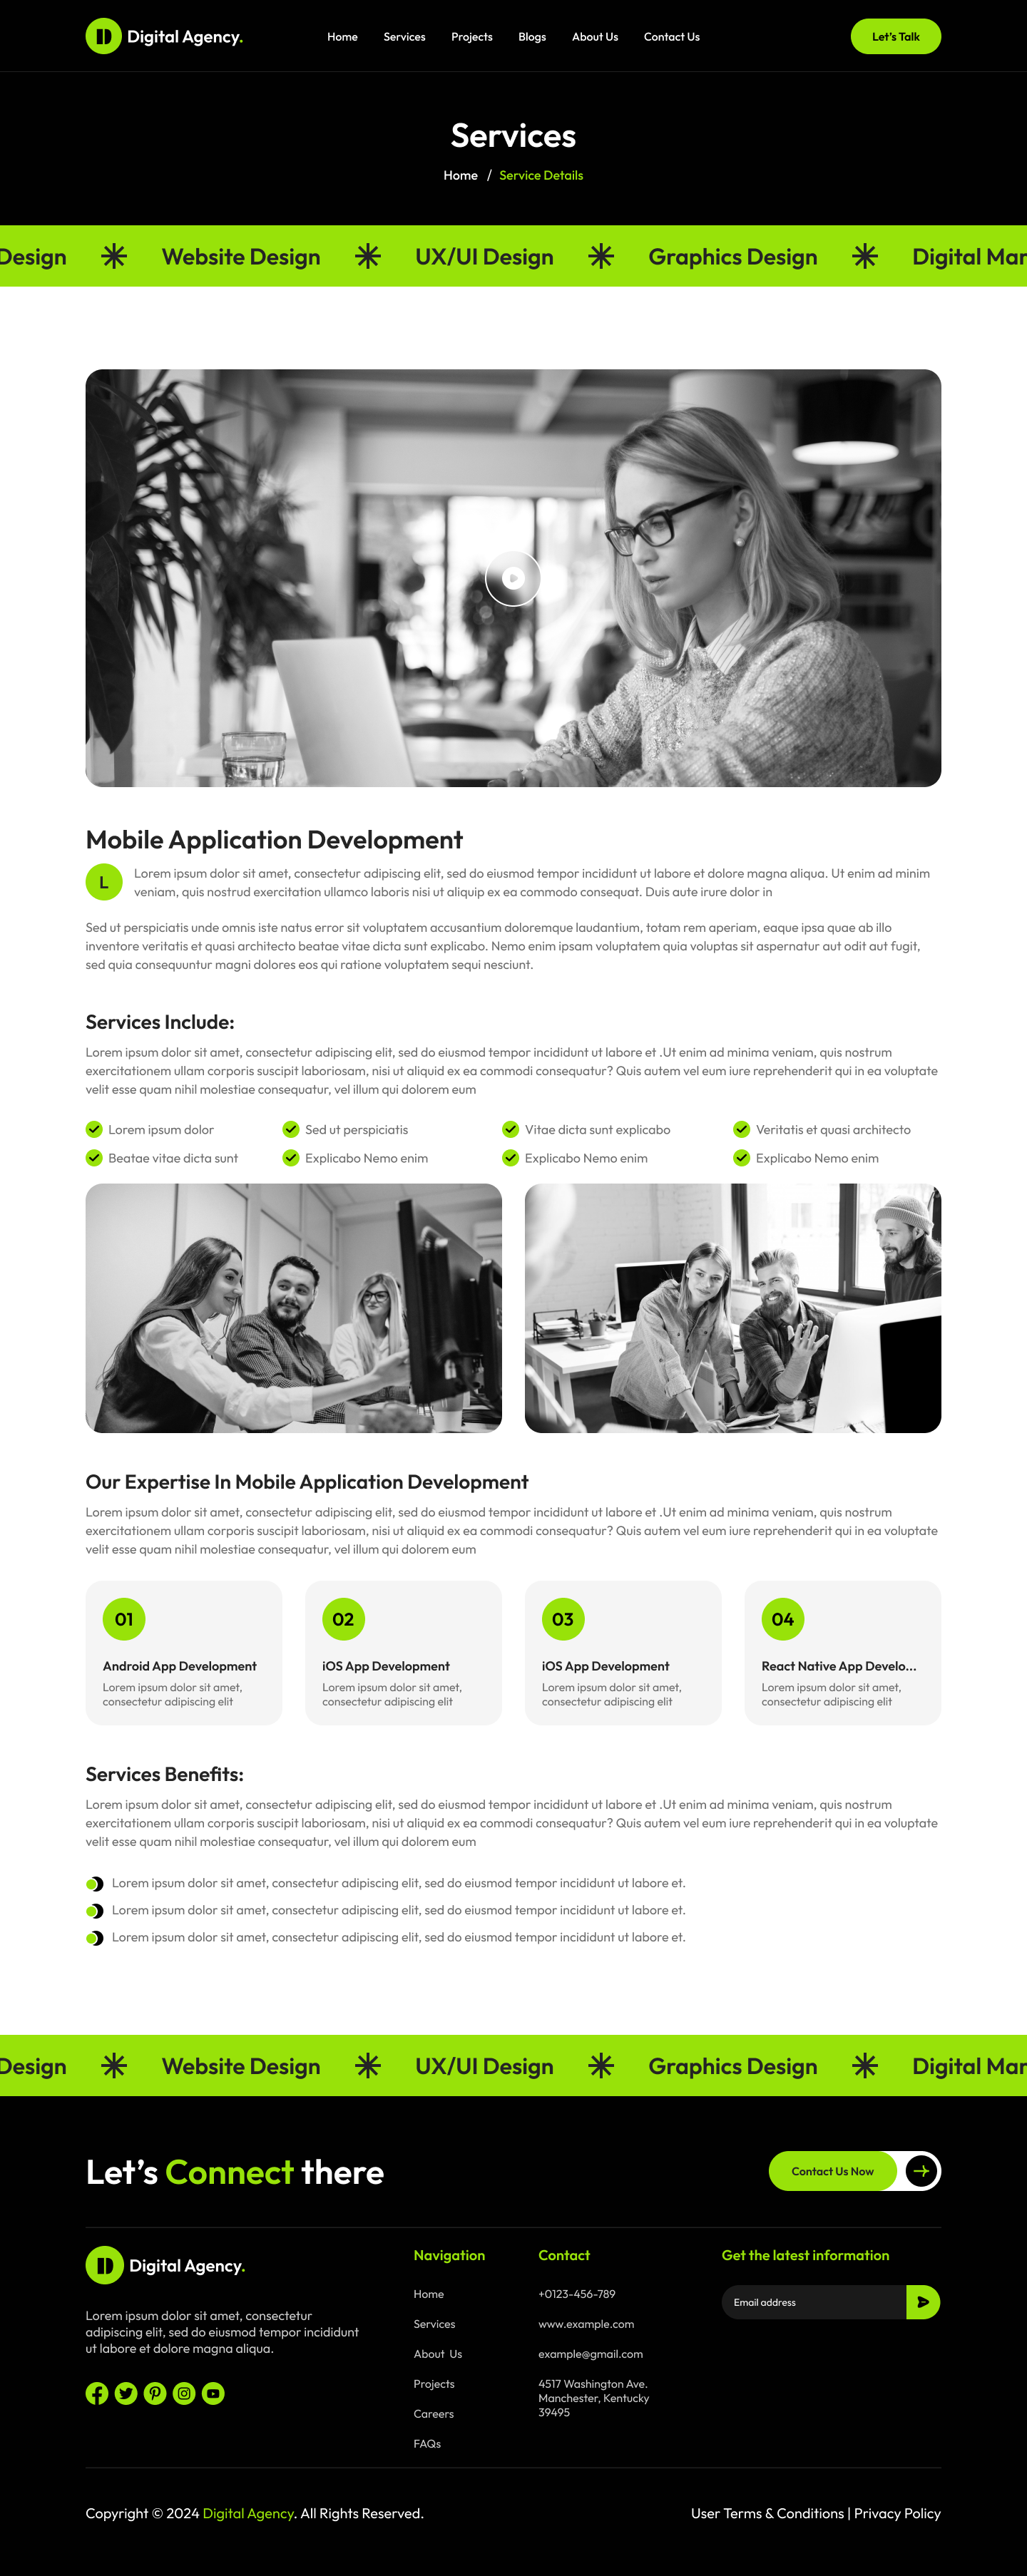 digital Agency website figma Service Details Page Design ui ux design
